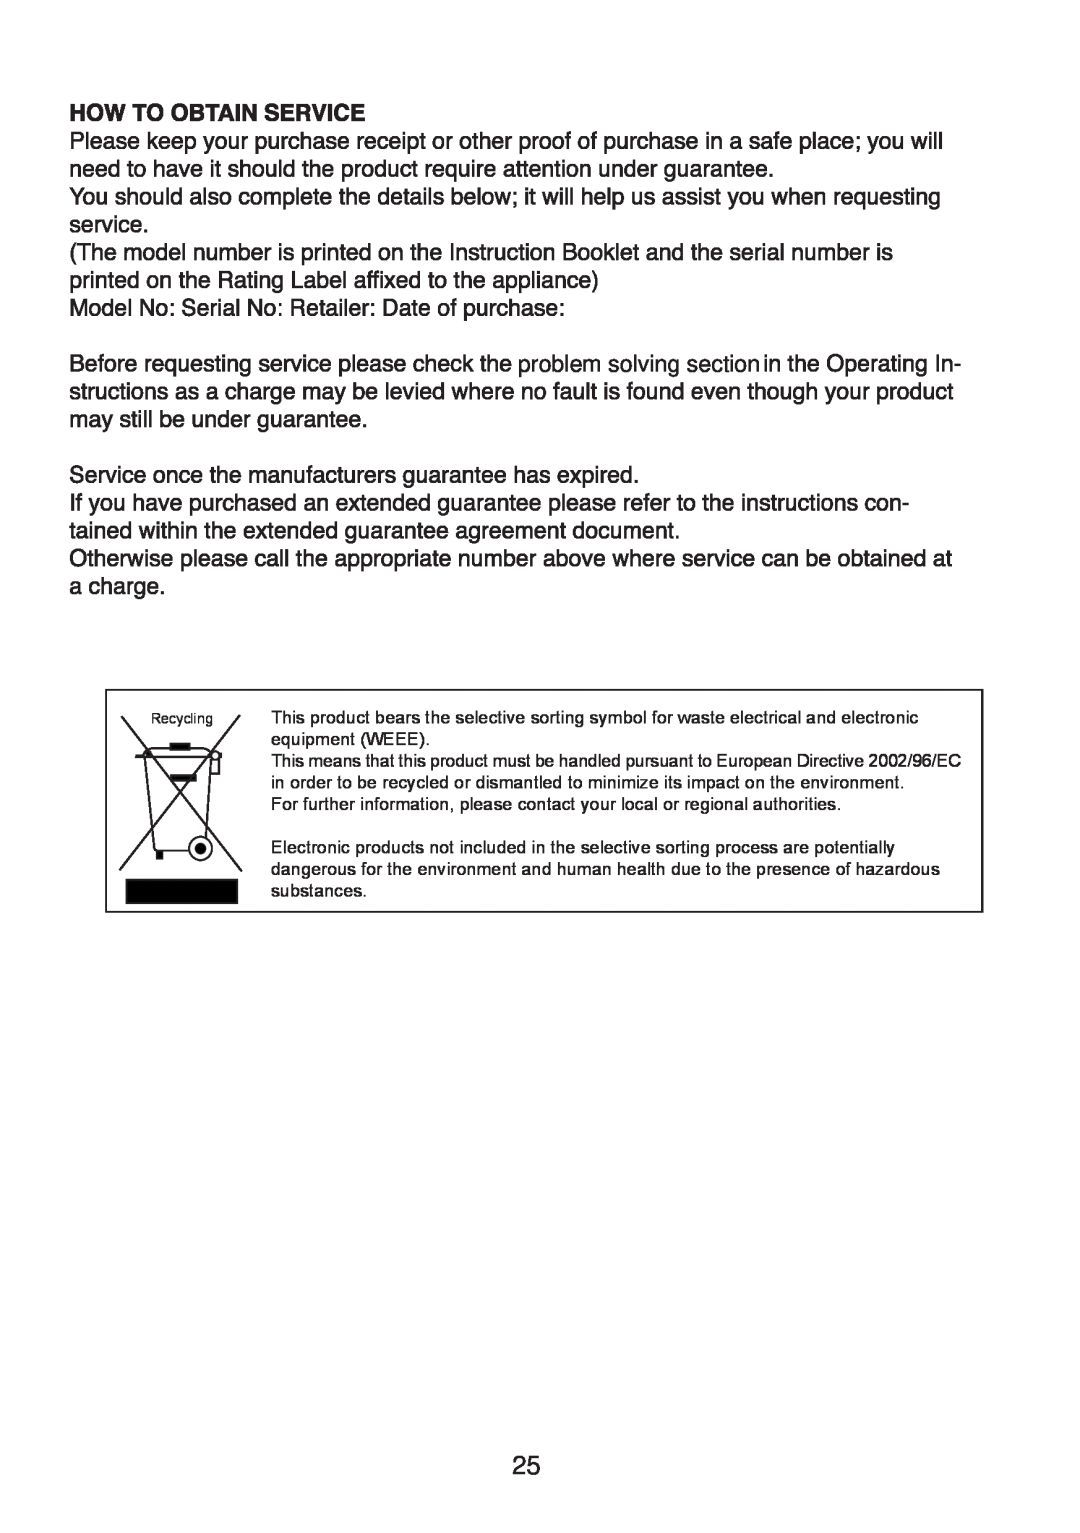 Glen Dimplex Home Appliances Ltd IFF5050 manual problem solving section 